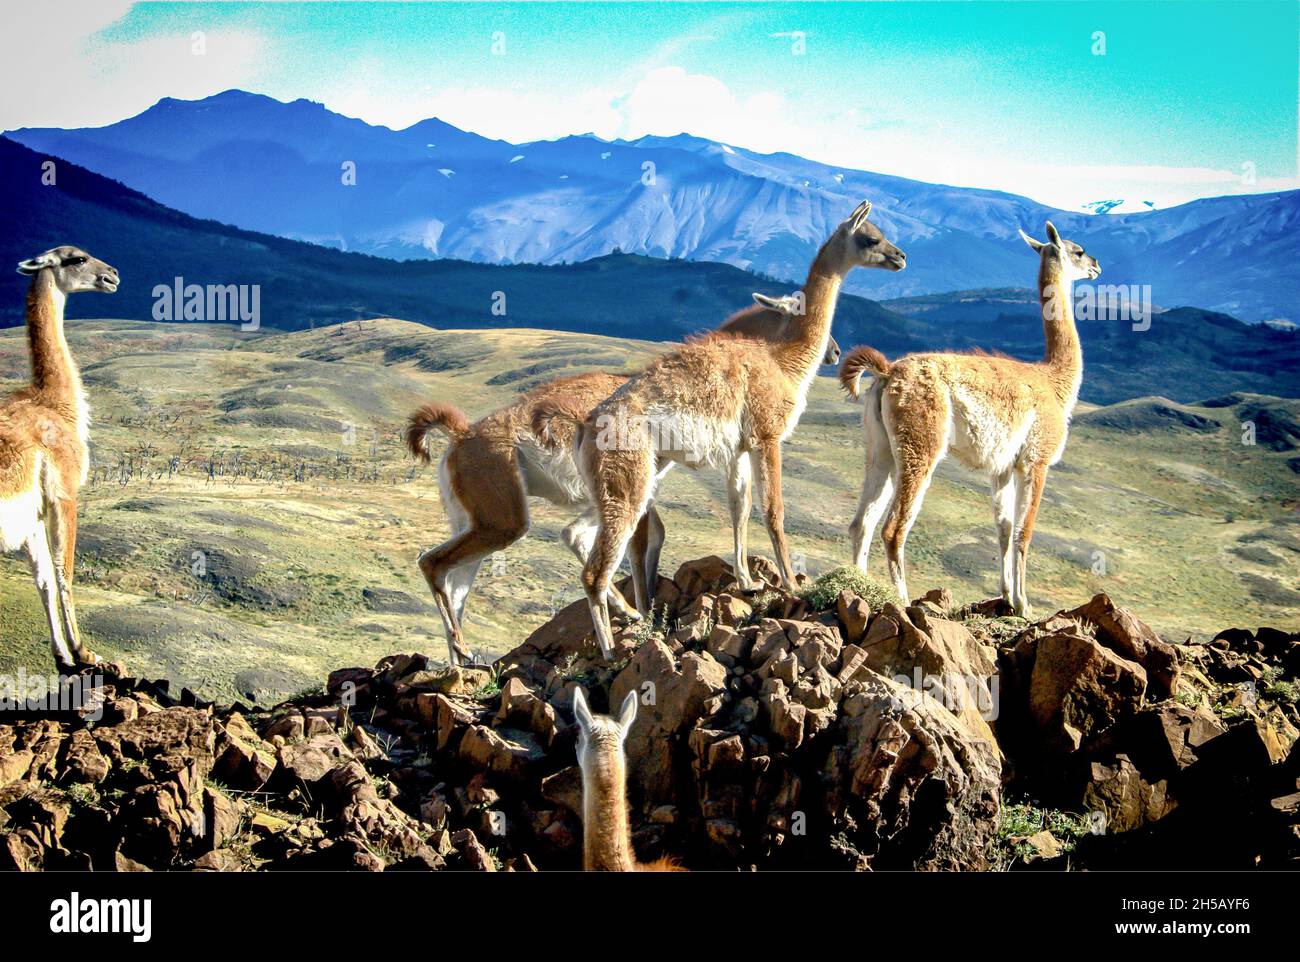 Llamas near Machu Pichu, Peru Stock Photo